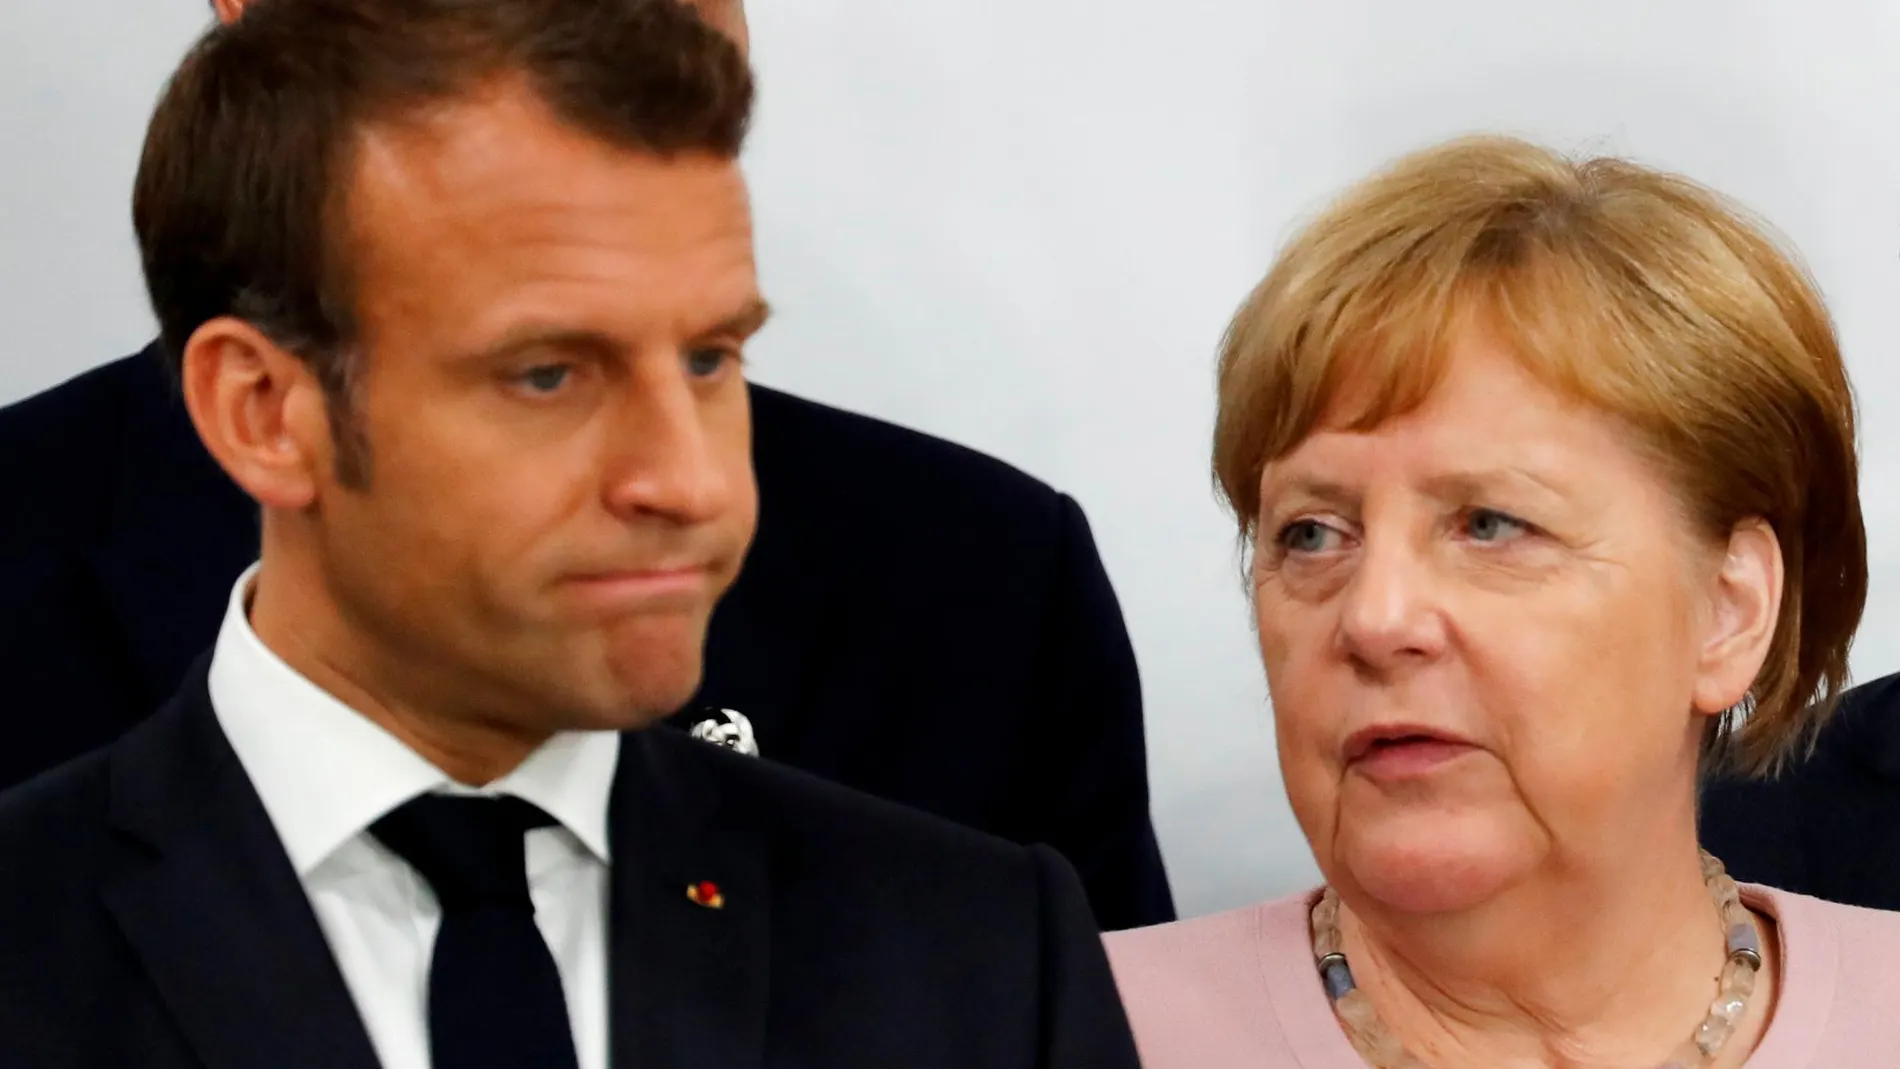 La nueva prórroga del Brexit vuelve a enfrentar a Emmanuel Macron y Angela Merkel